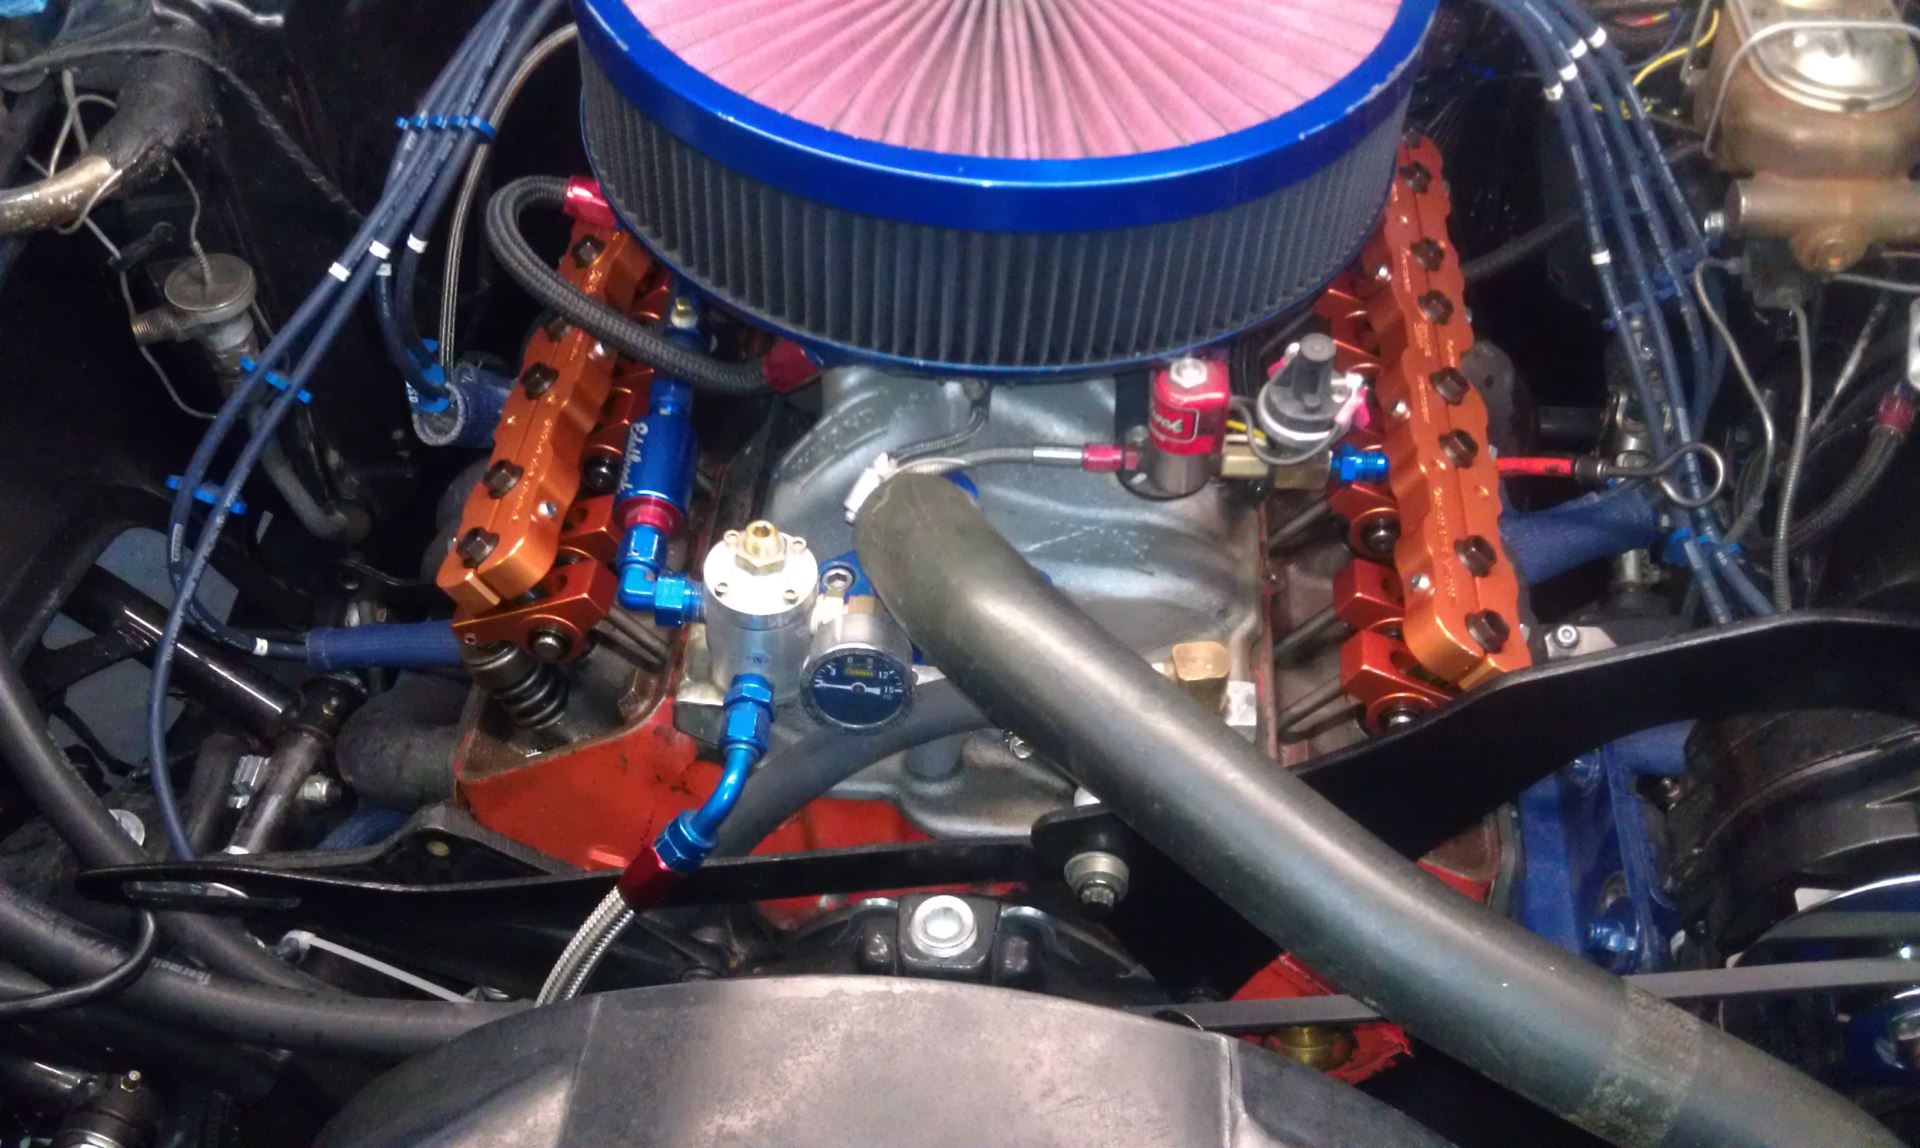 Classic Carburetors vs. Fuel Injection Systems